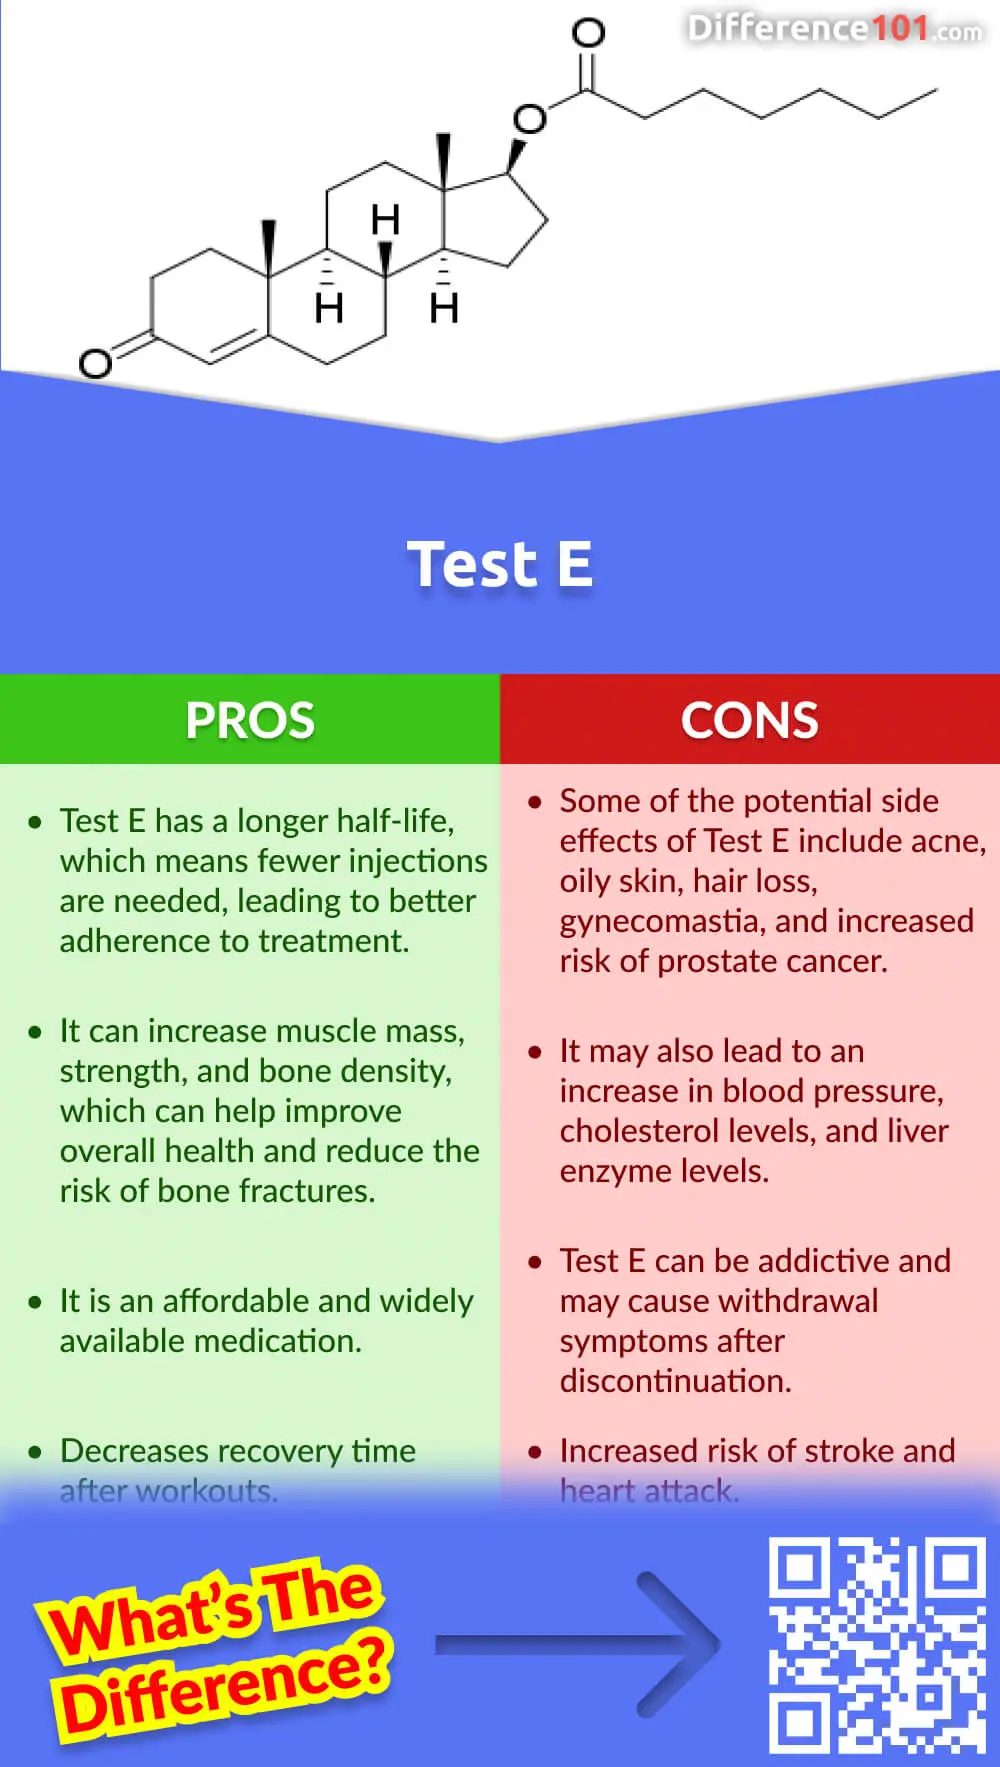 Test E Pros & Cons
